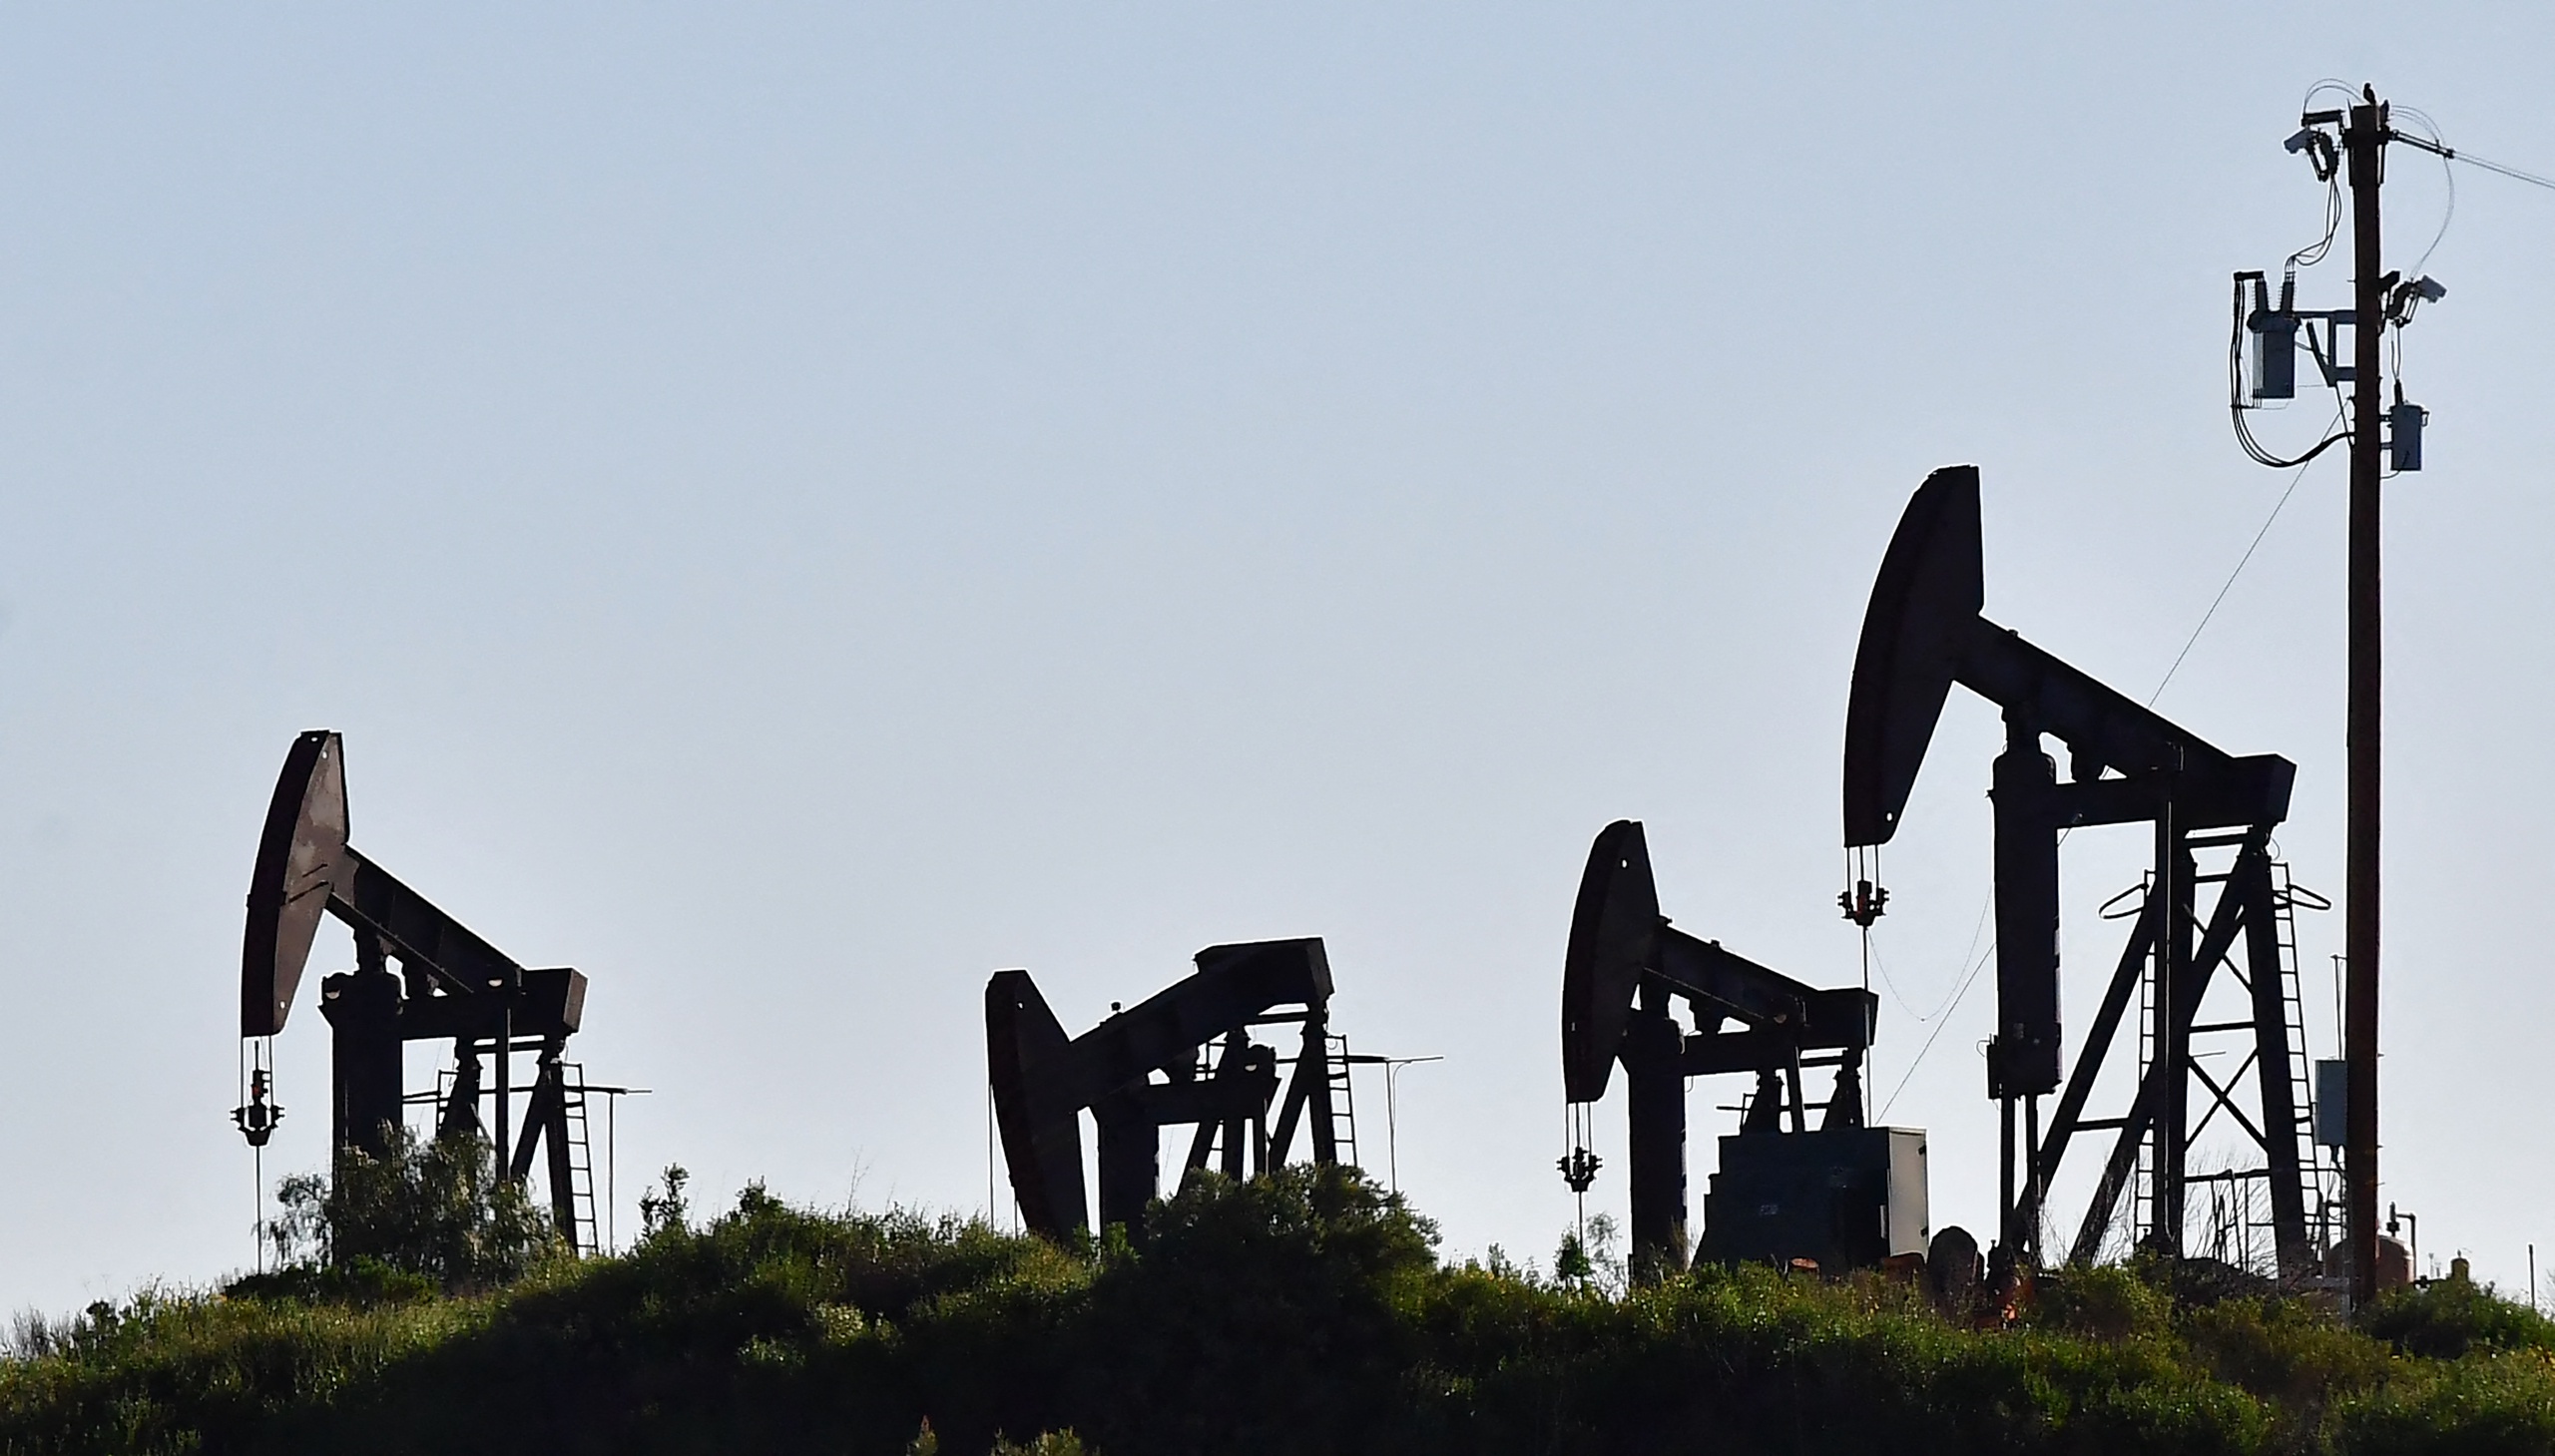 Nadat de gasprijs al flink daalde de afgelopen tijd, is nu hetzelfde te zien op de markt voor olie. Door de angst dat er steeds minder olie wordt gebruikt, zakte de prijs van een vat West Texas Intermediate (WTI) olie onder de 85 dollar. 